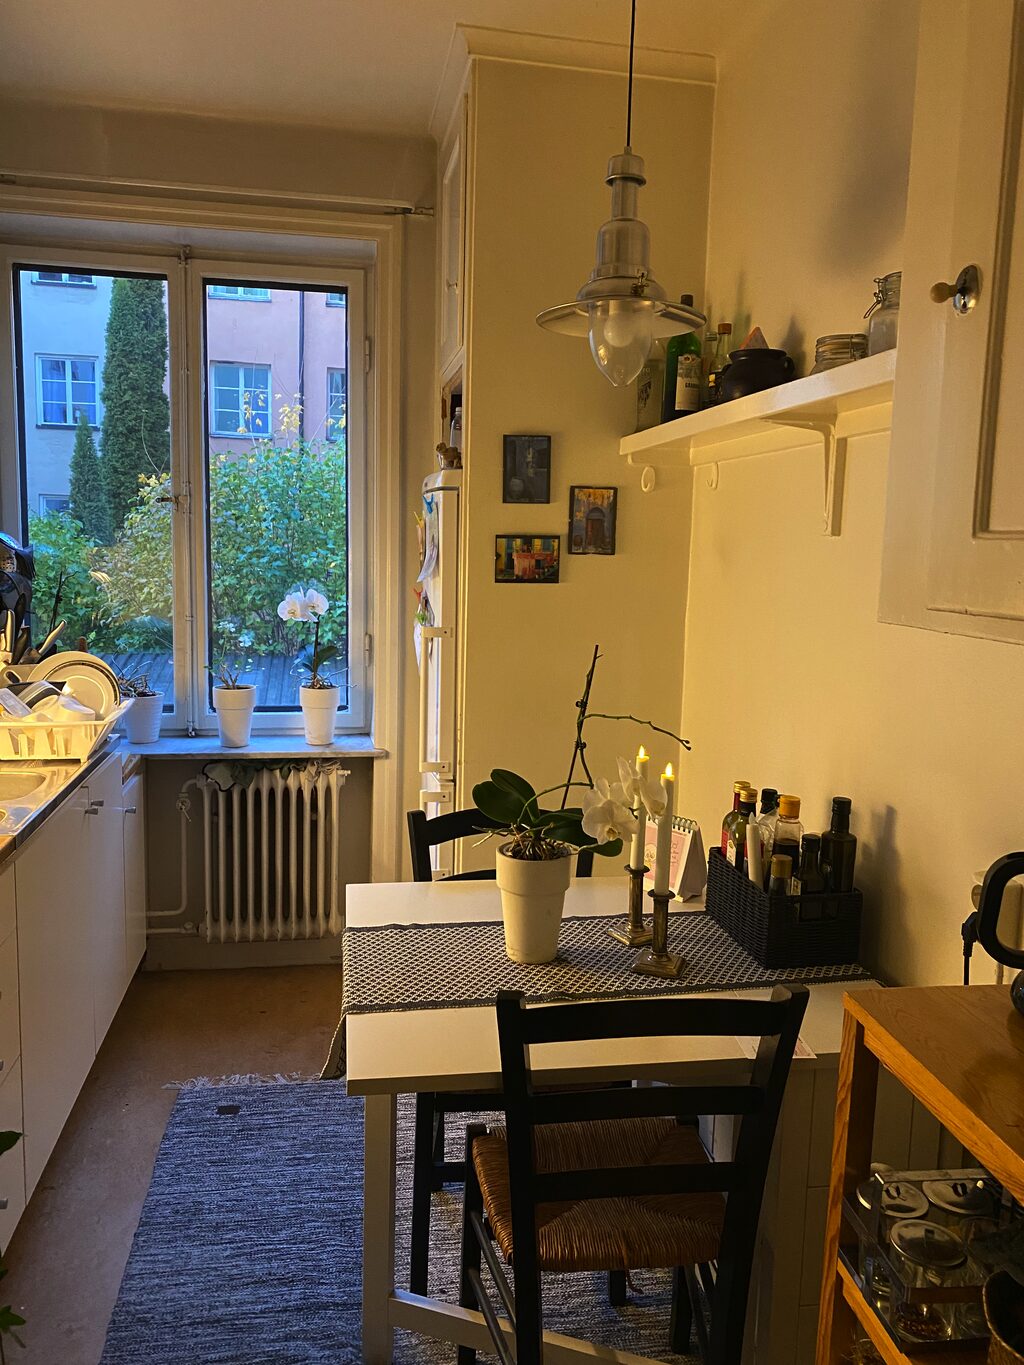 Lägenhetsbyte - Bondegatan 11, 116 23 Stockholm